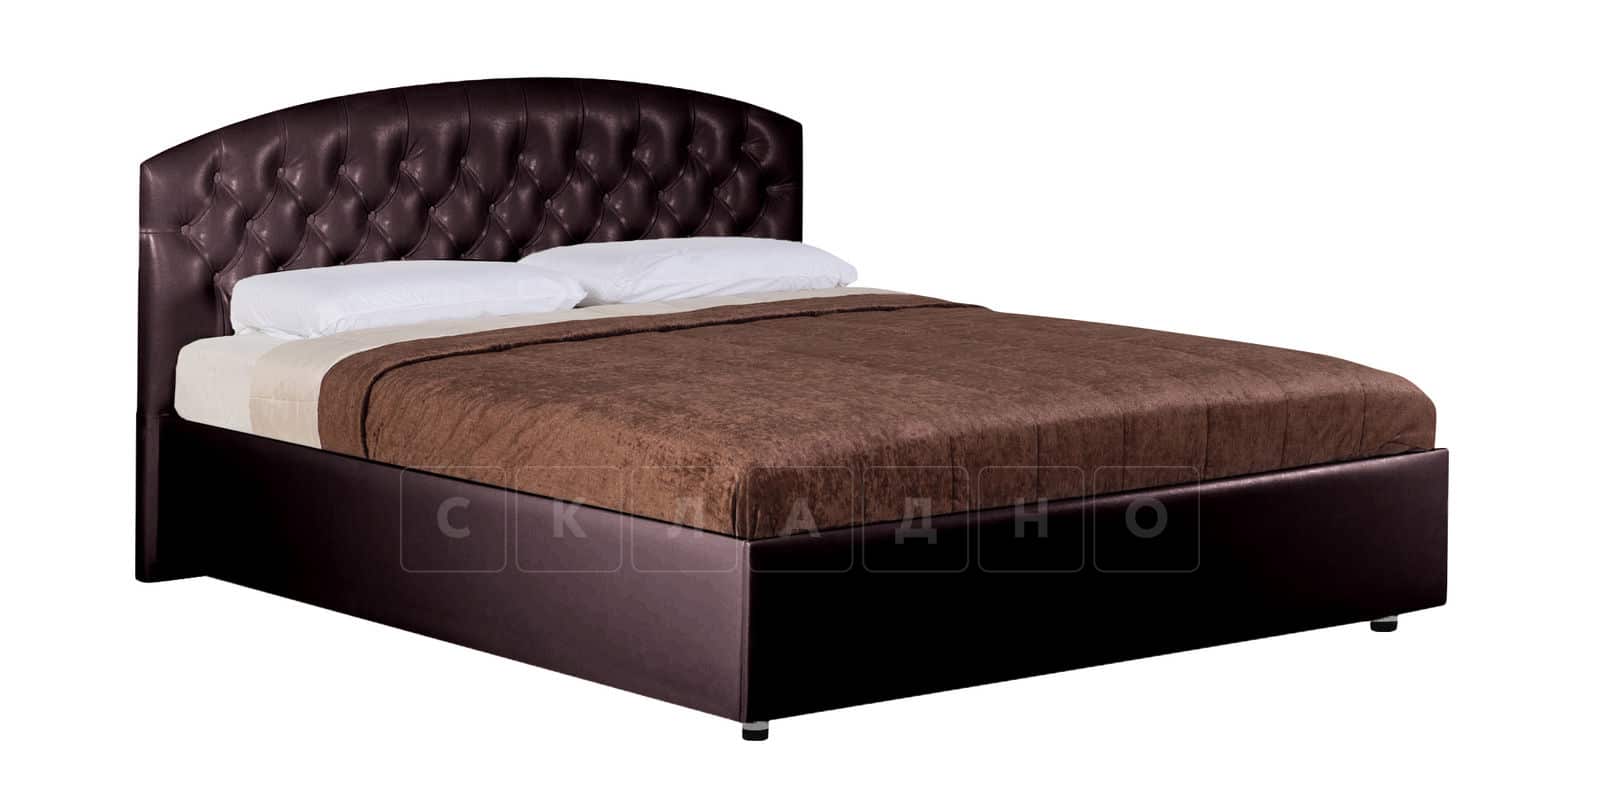 Мягкая кровать Малибу 160 см экокожа шоколадного цвета вариант 1 фото 3 | интернет-магазин Складно